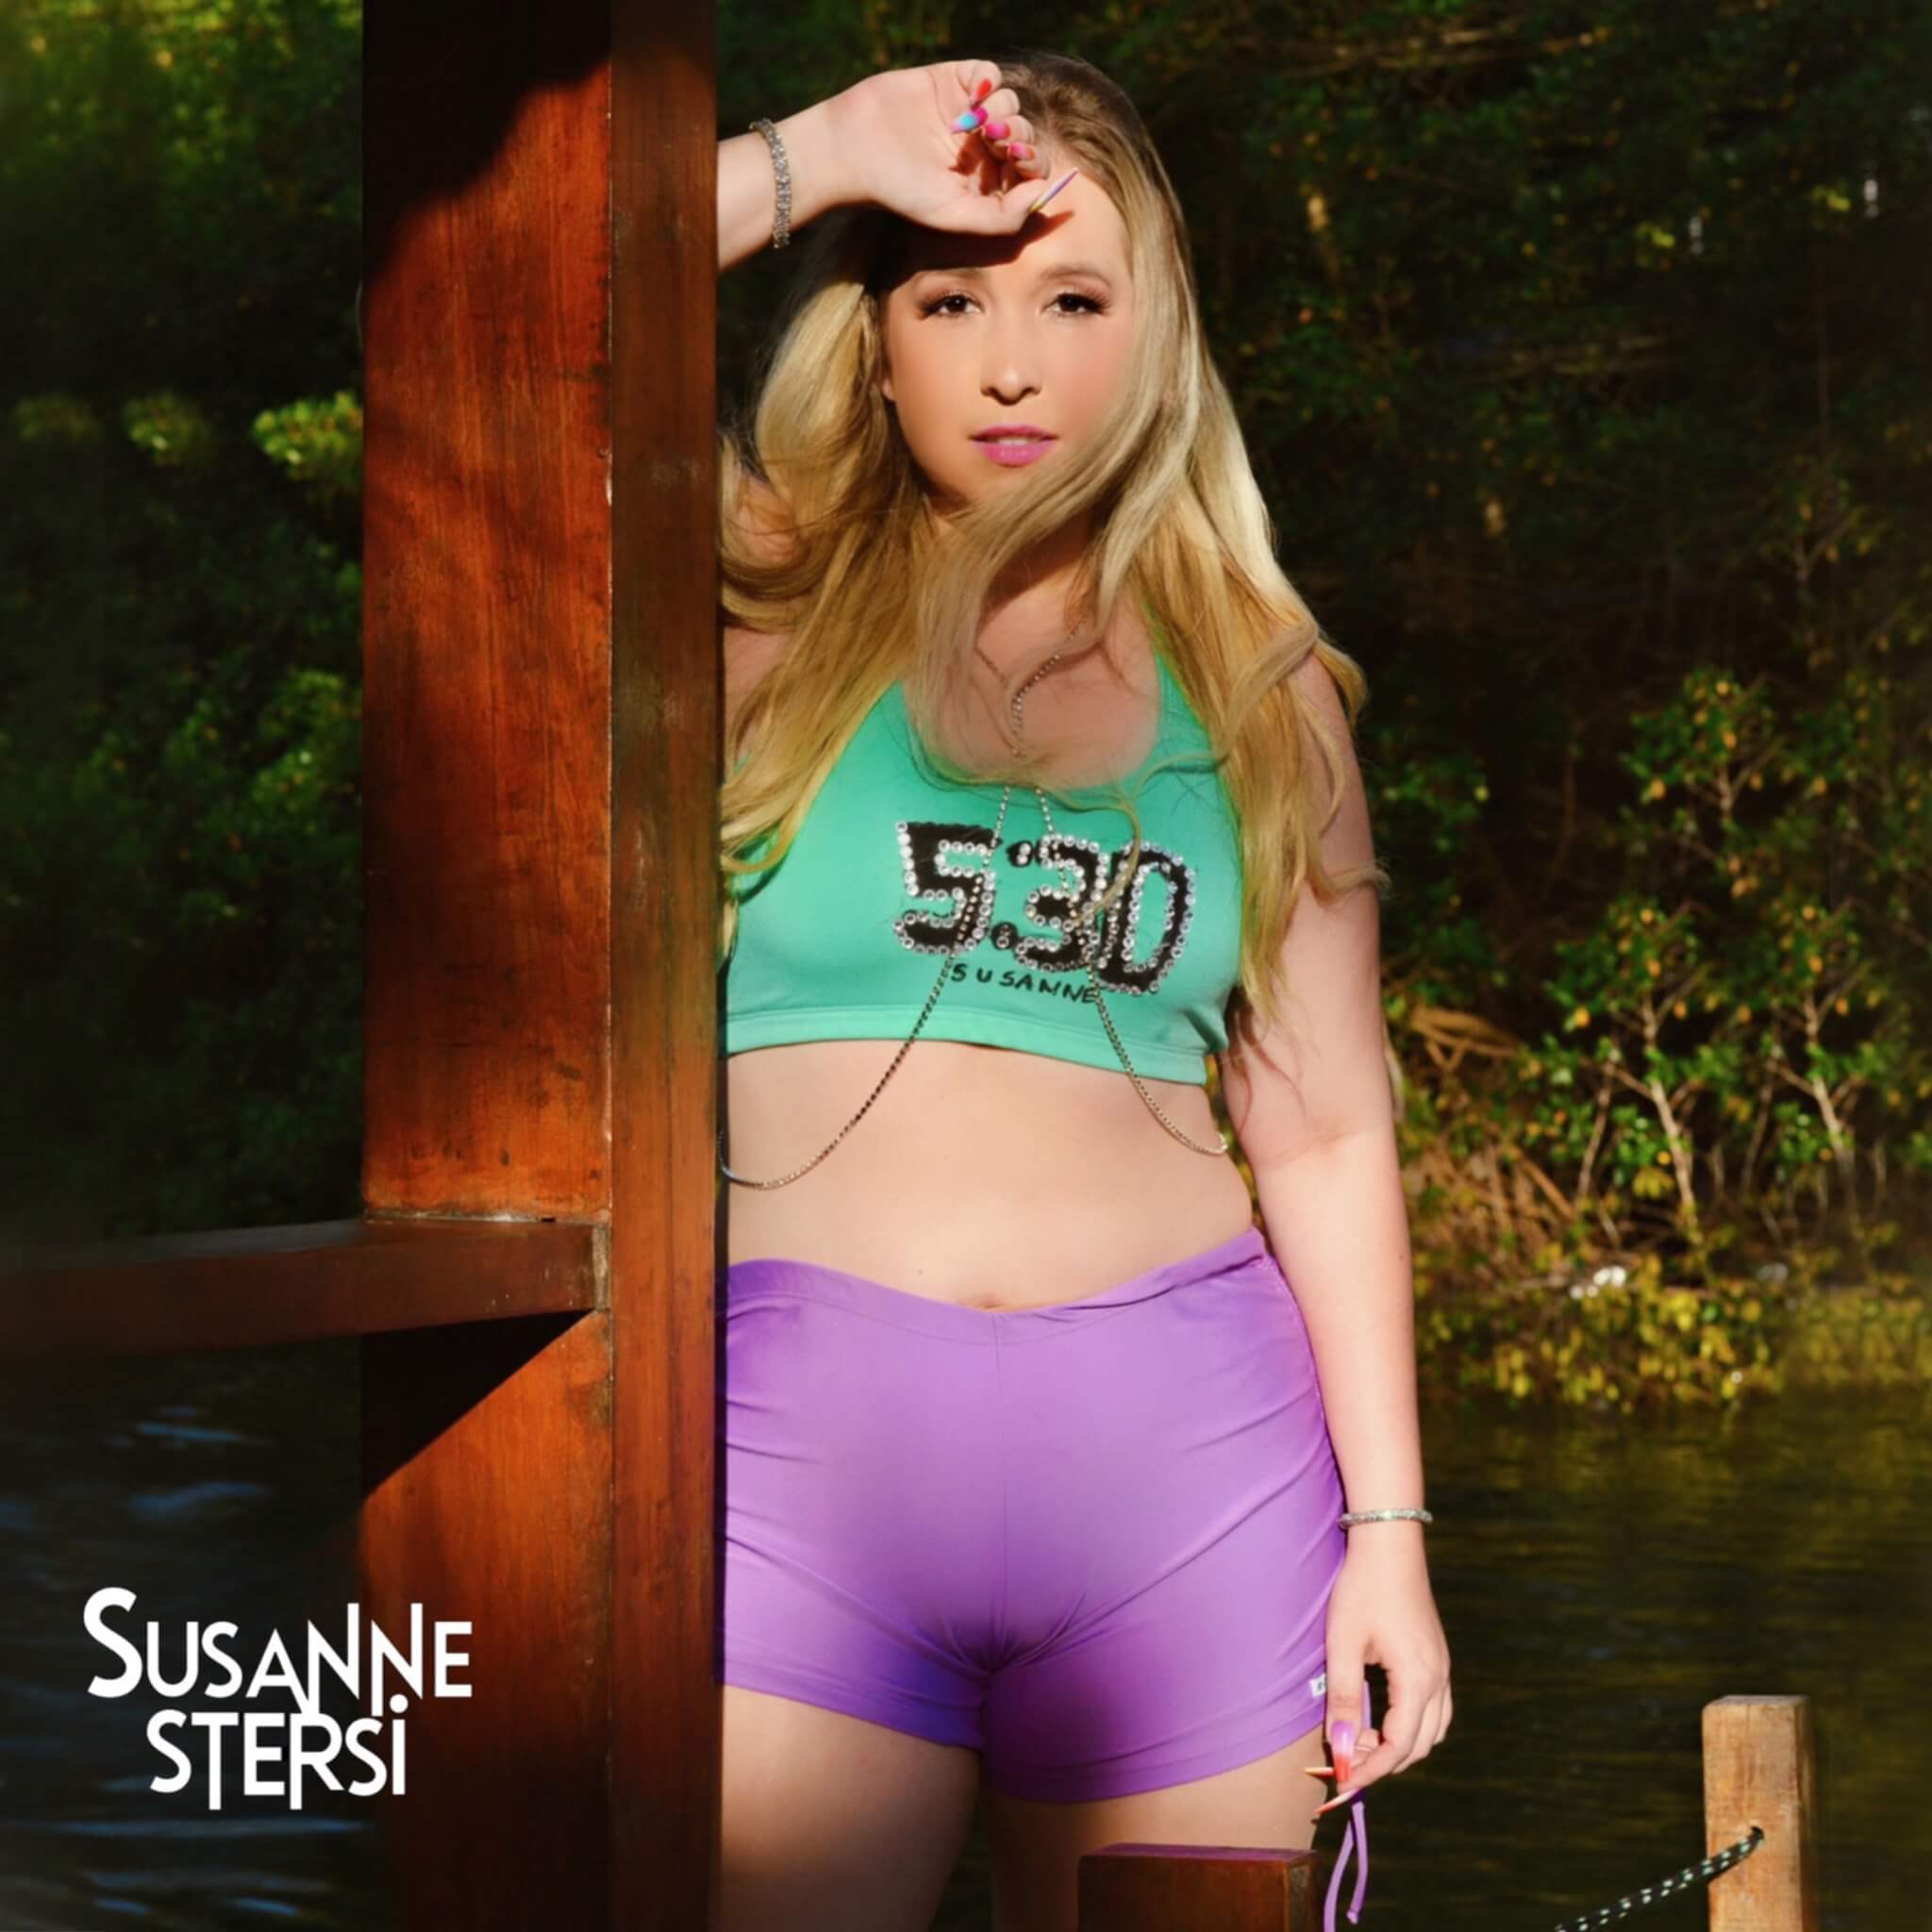 Susanne Stersi faz sucesso no pagode e lança seu novo single de trabalho “5:30” 18